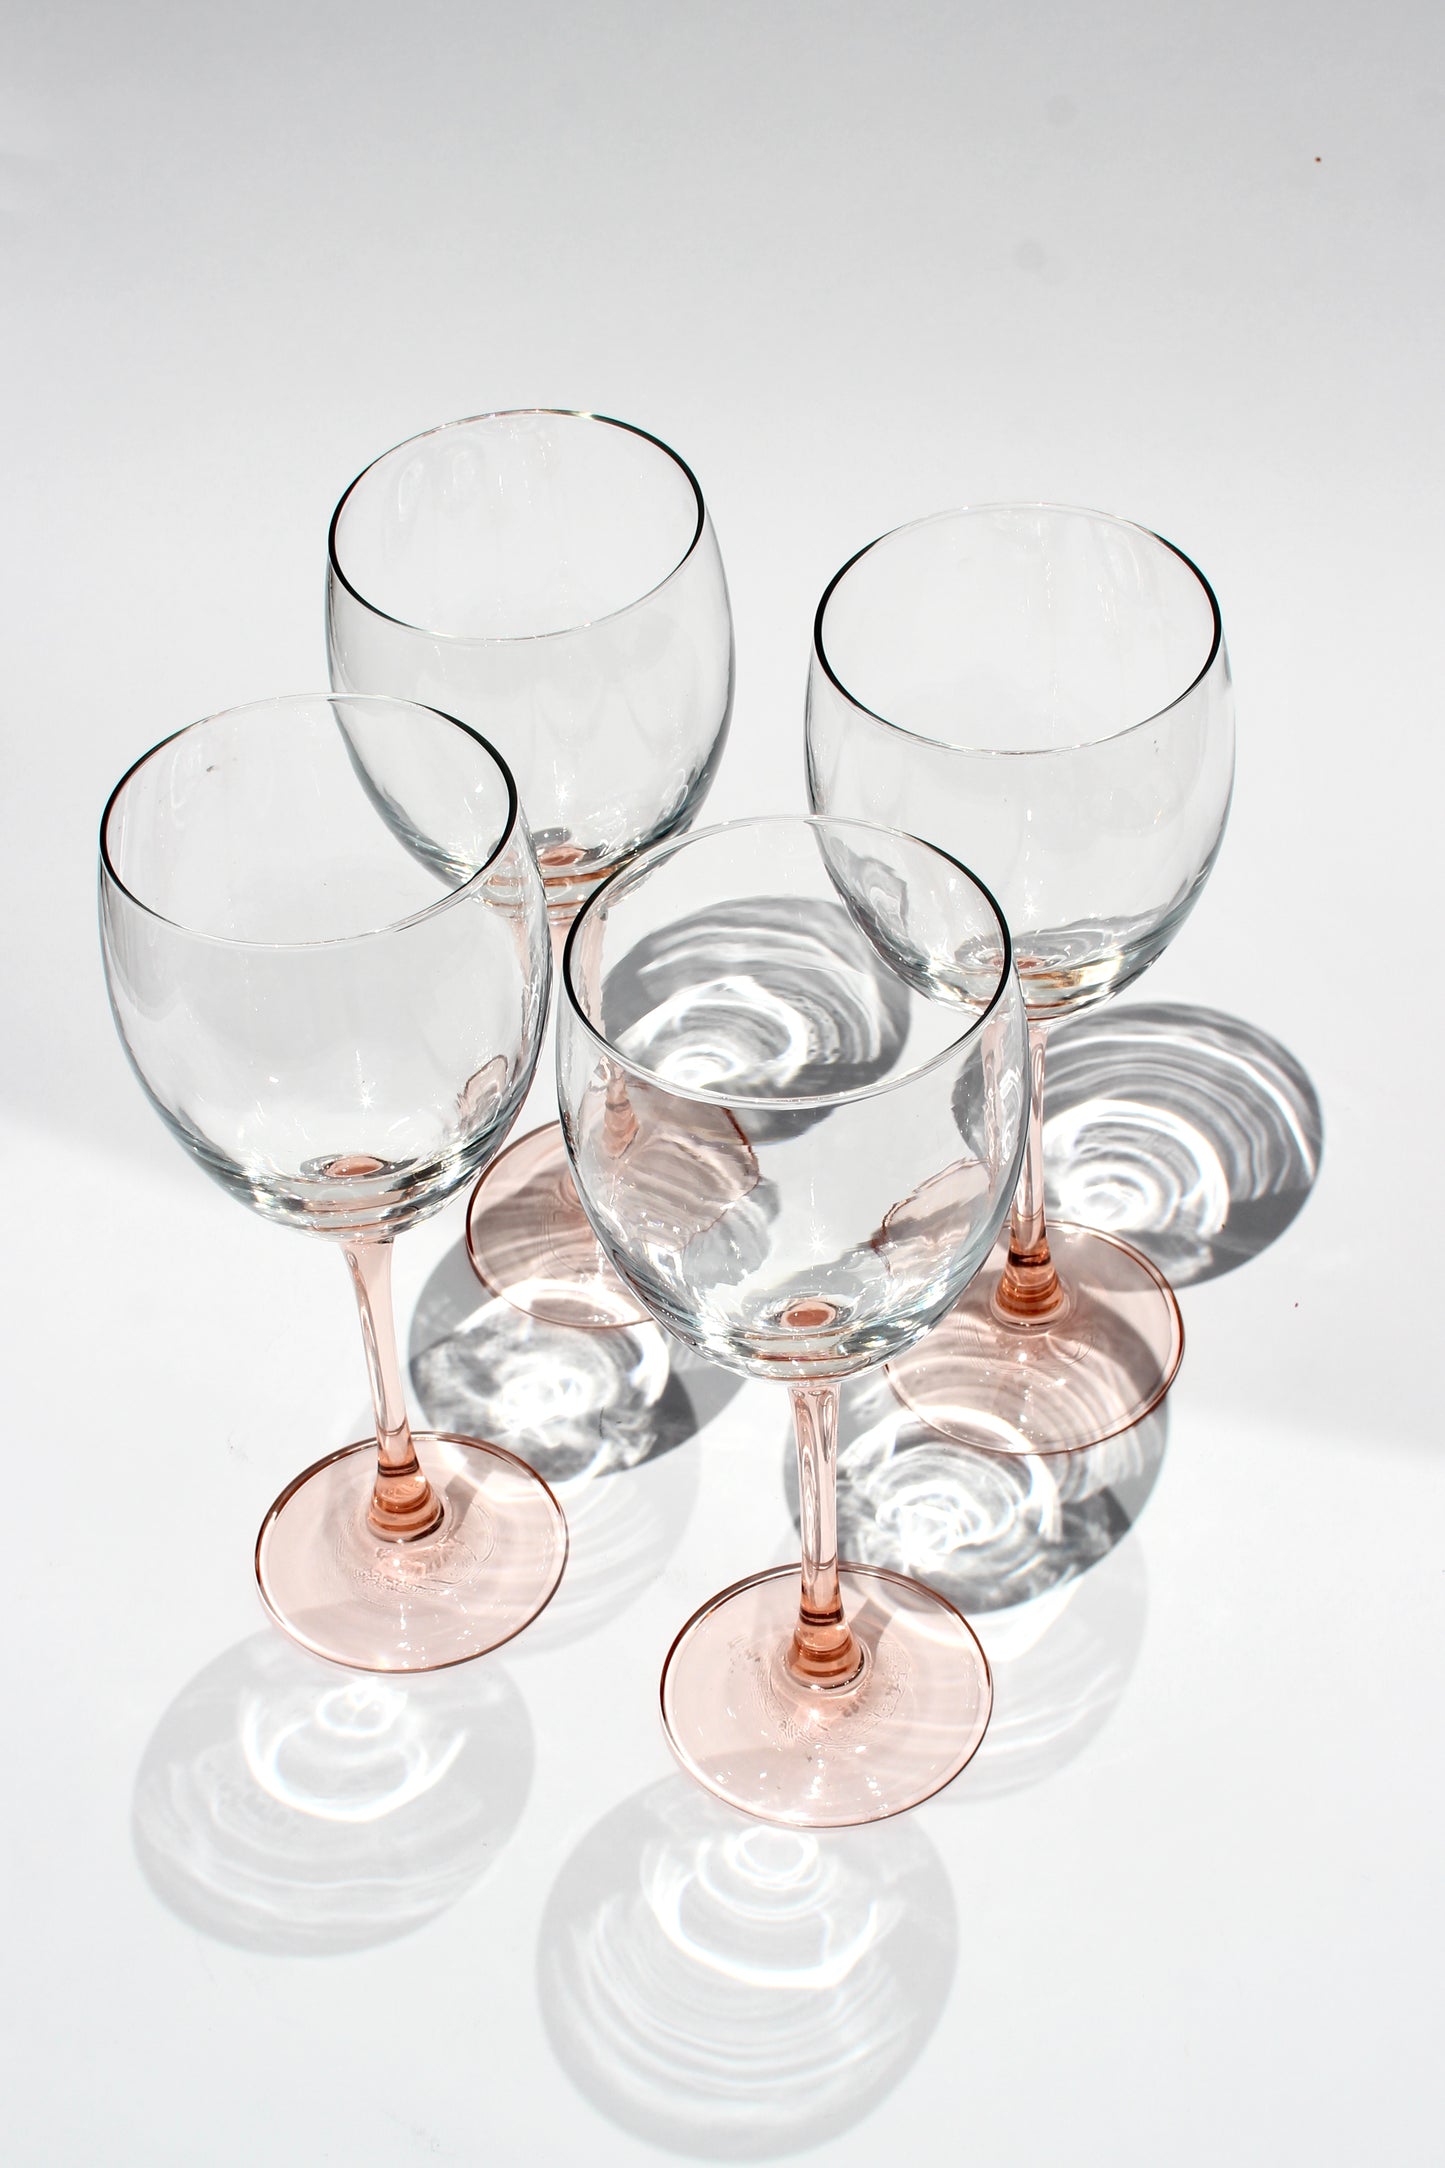 rose stemmed wine glasses (4)